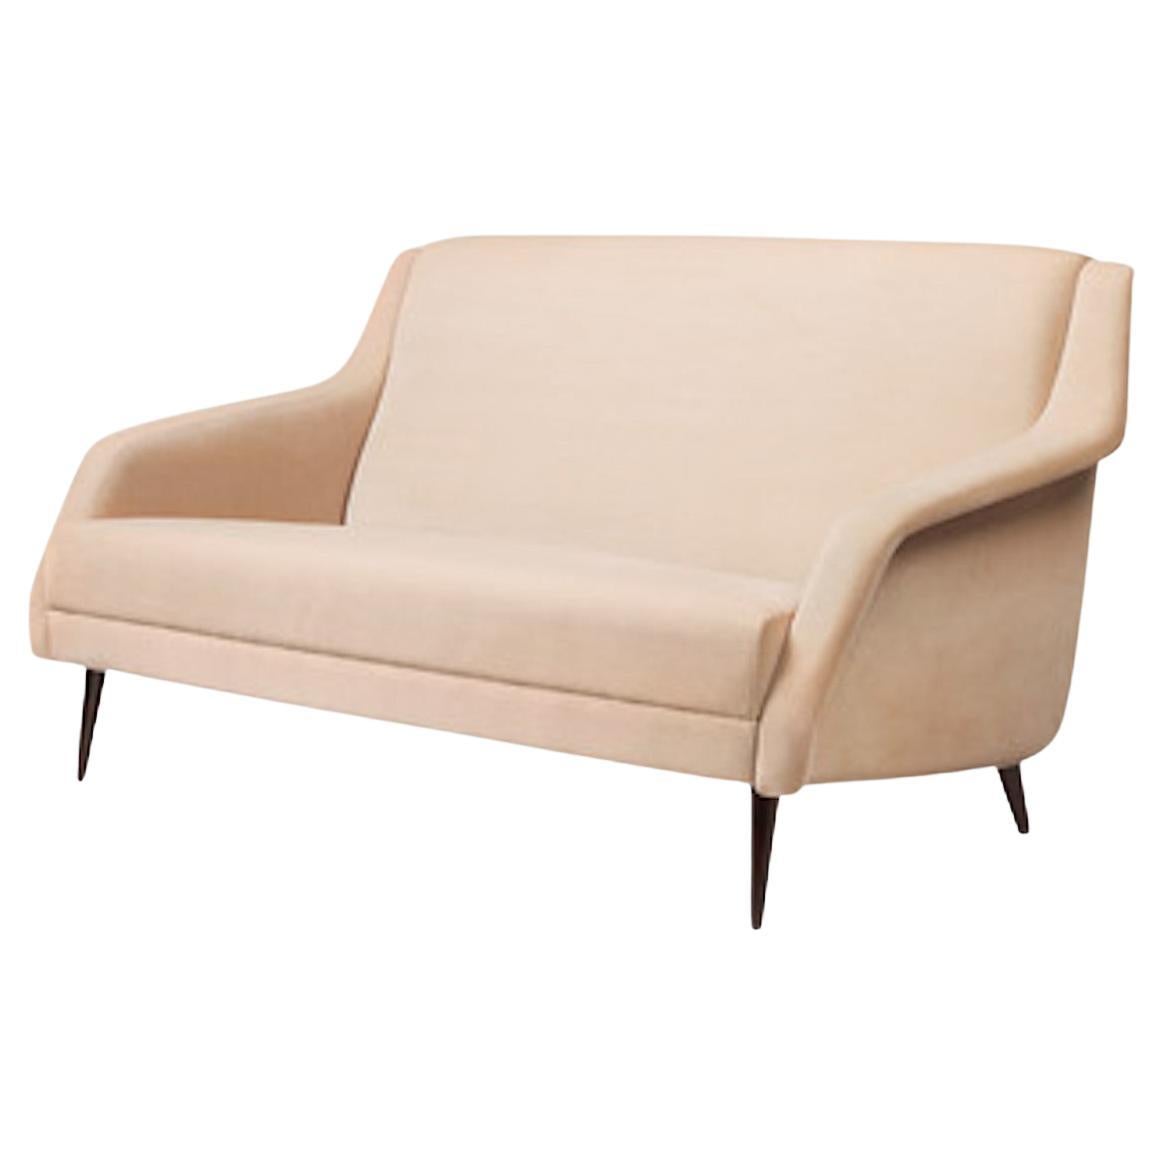 Der CDC.1 Lounge Chair wurde 1954 von Carlo De Carli entworfen und zeichnet sich durch den für die damalige Zeit typischen eleganten und minimalistischen Designstil aus. Der CDC.1 Lounge Chair trifft den Boden auf anmutige und schlanke Weise; seine